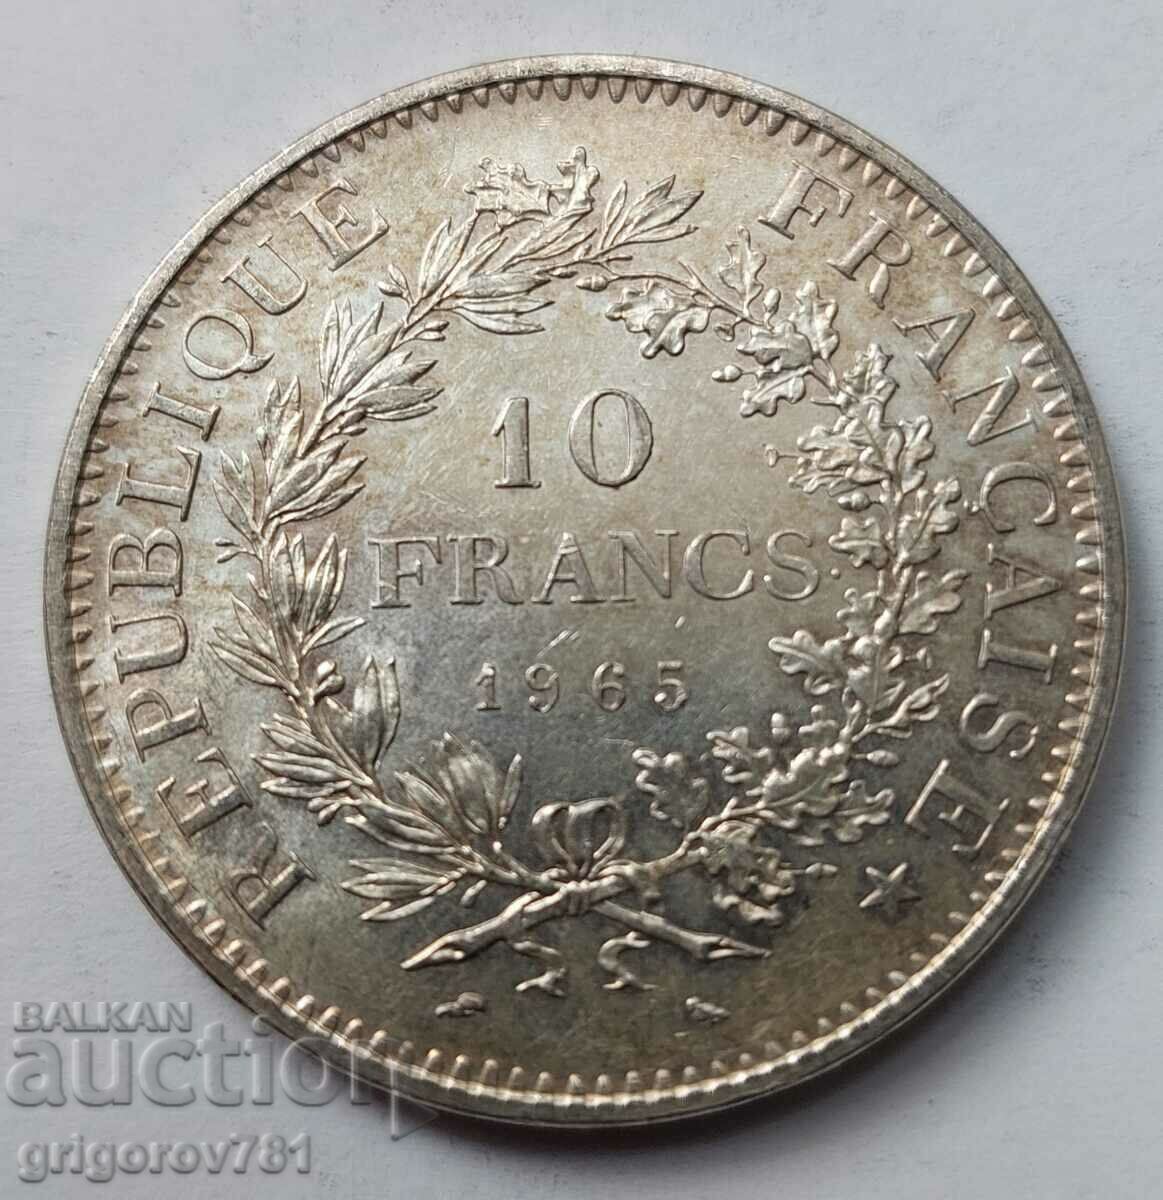 10 Φράγκα Ασήμι Γαλλία 1965 - Ασημένιο νόμισμα #50